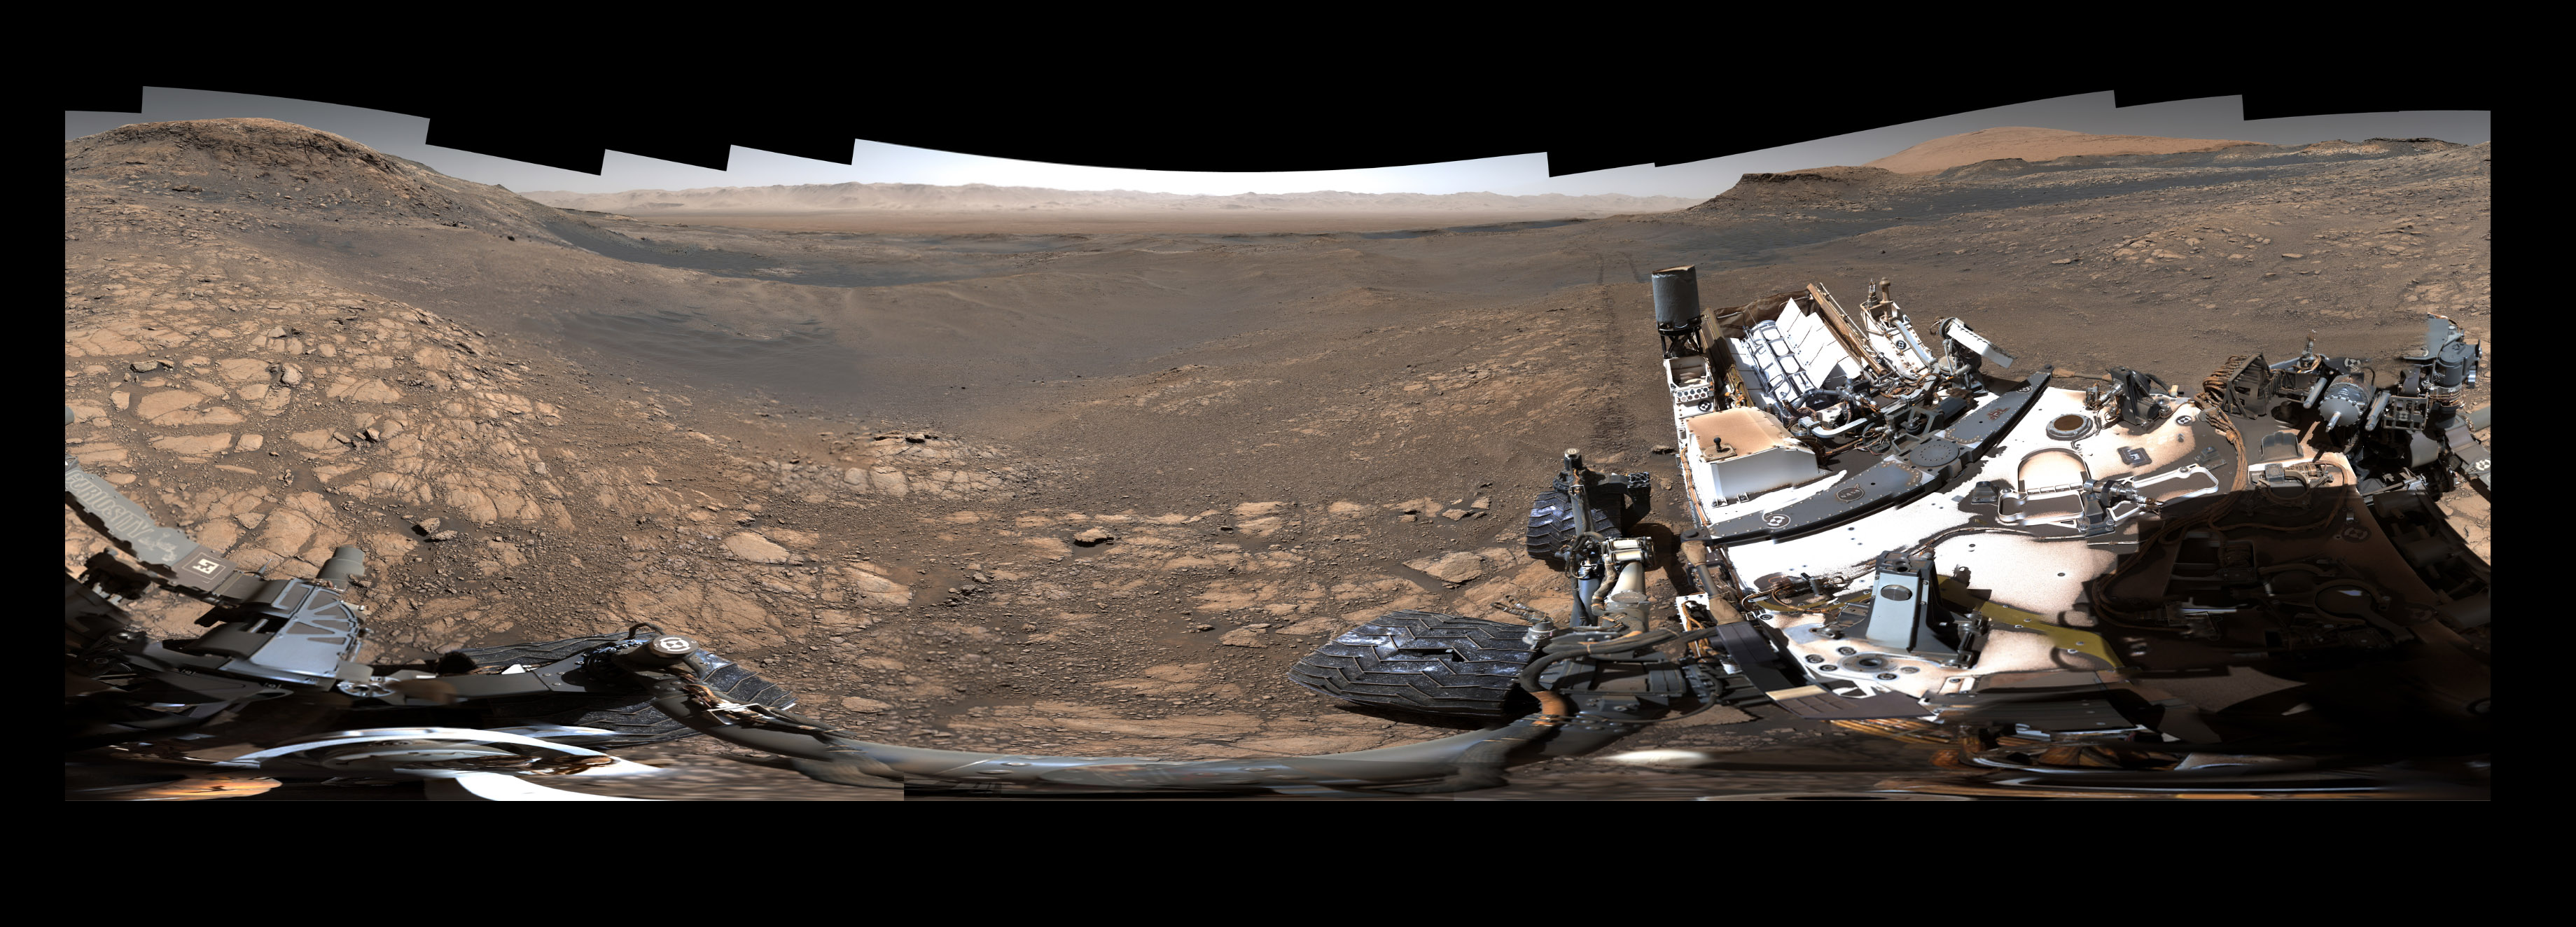 迄今为止最高清晰度的火星表面全景照发布，像素18亿